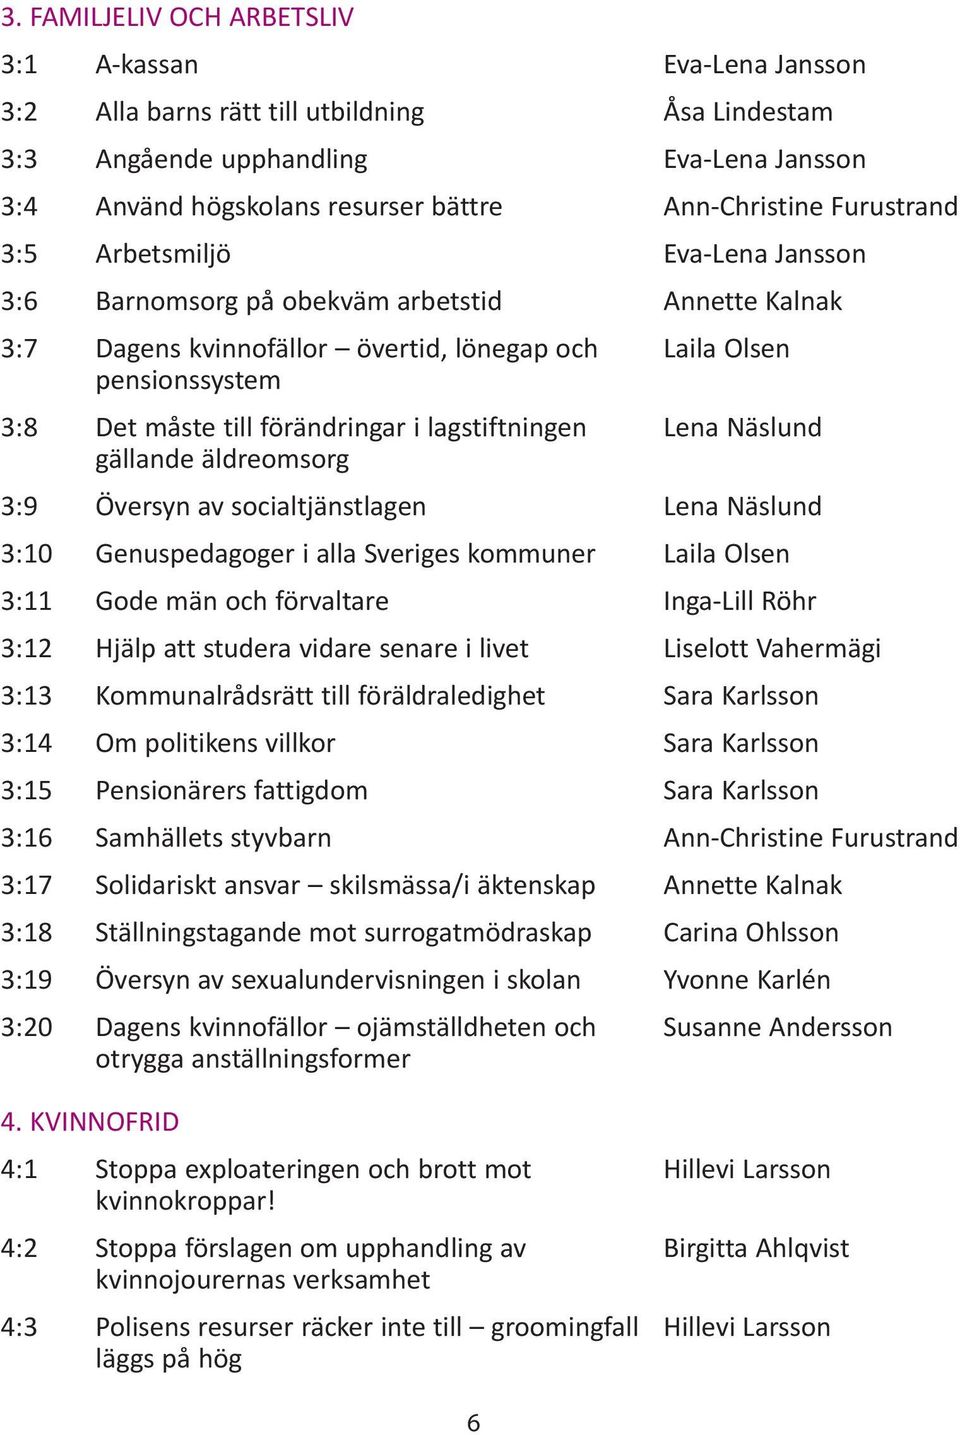 förändringar i lagstiftningen Lena Näslund gällande äldreomsorg 3:9 Översyn av socialtjänstlagen Lena Näslund 3:10 Genuspedagoger i alla Sveriges kommuner Laila Olsen 3:11 Gode män och förvaltare